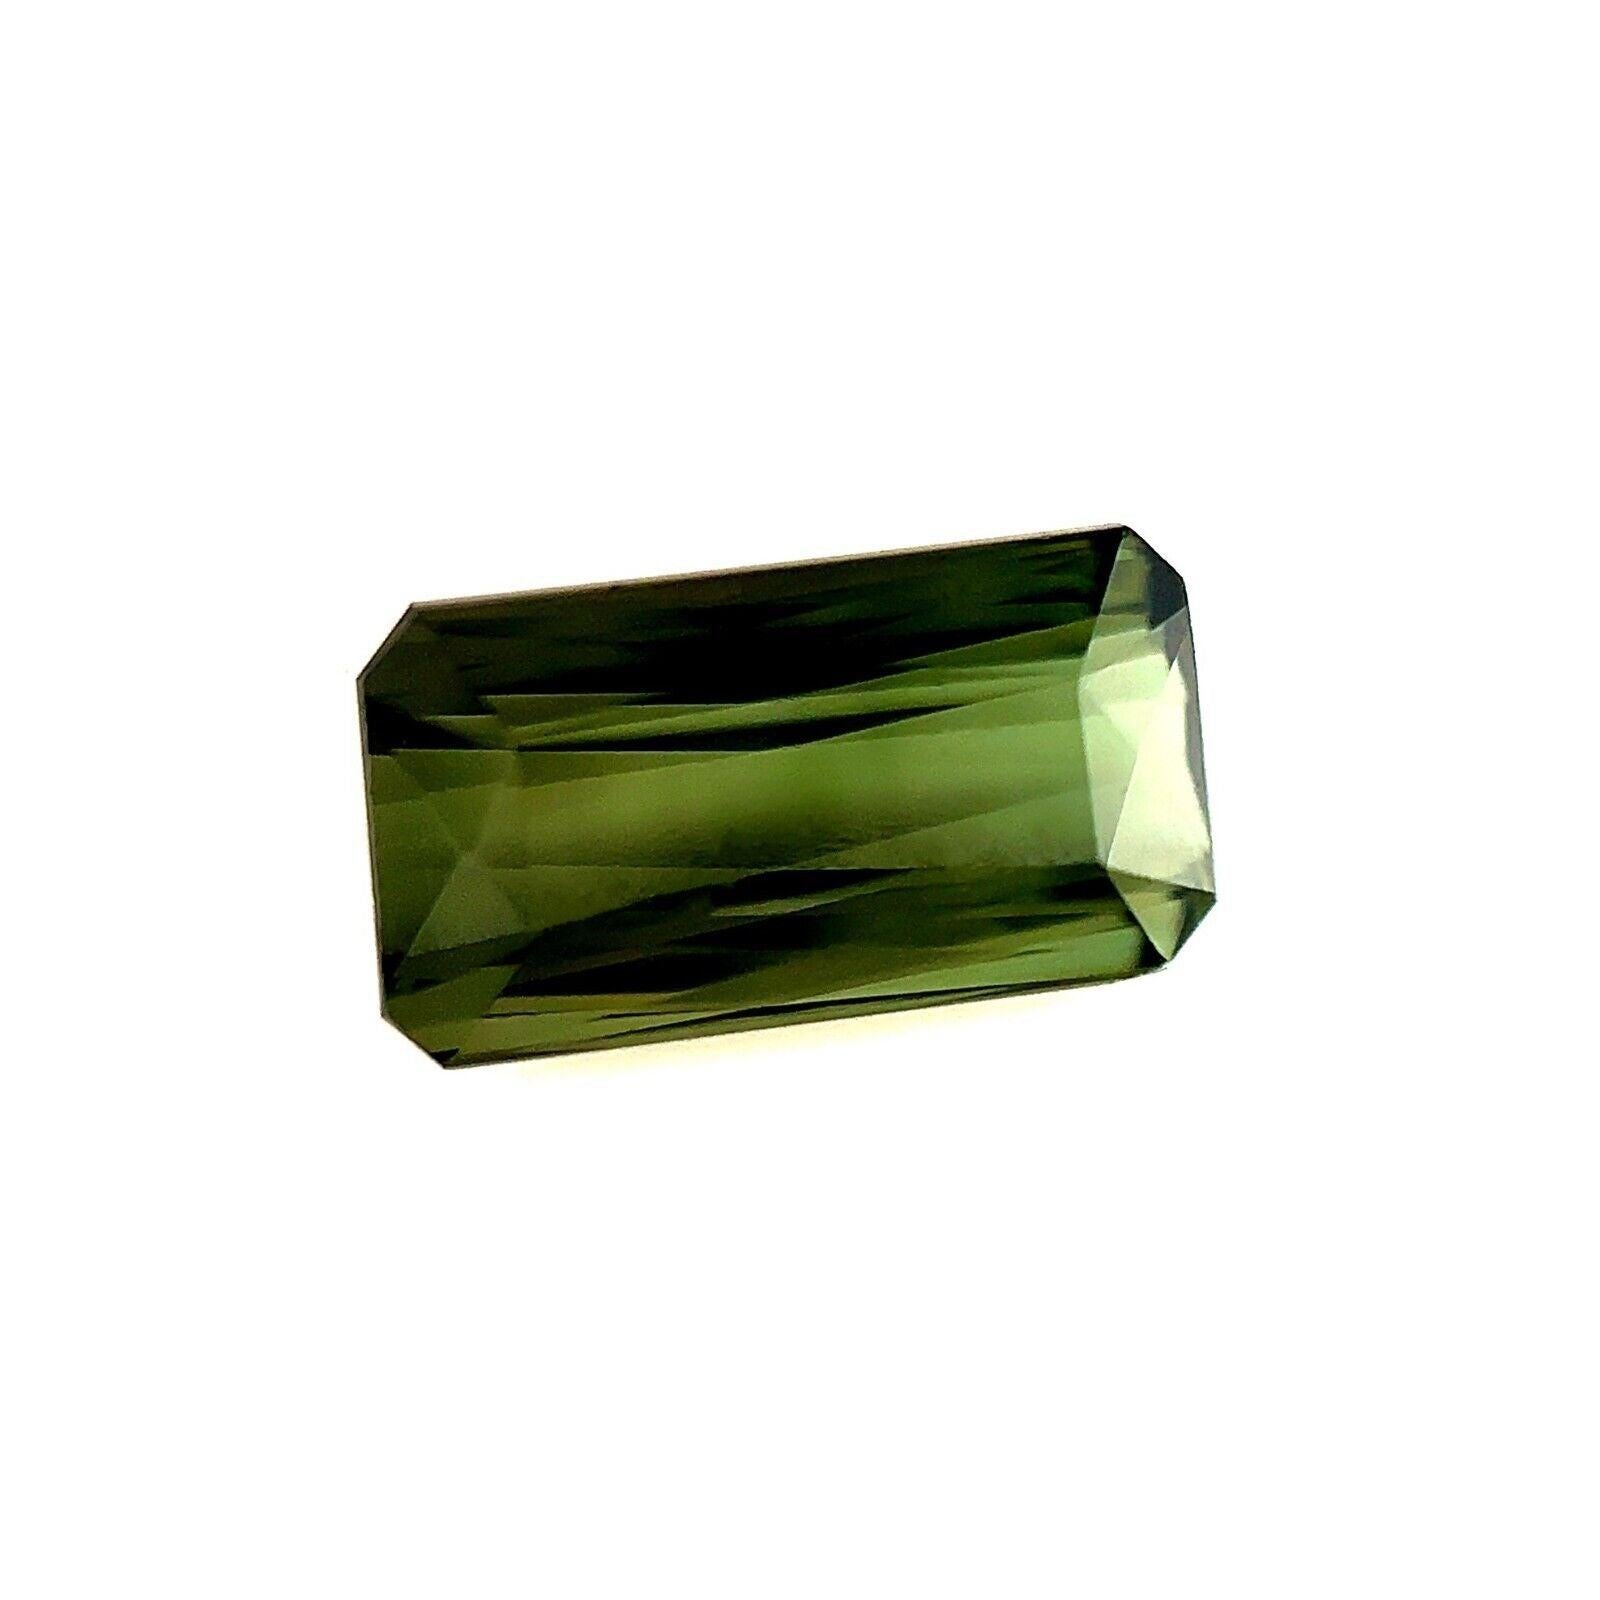 3.30ct Natürlicher Grüner Turmalin Fancy Scissor Smaragd Oktagon Schliff 11.2x5.8mm VVS

Natürlicher grüner Turmalin Edelstein.
3.30 Karat mit einer schönen tiefgrünen Farbe und ausgezeichneter Reinheit. VVS.
Außerdem hat er einen ausgezeichneten